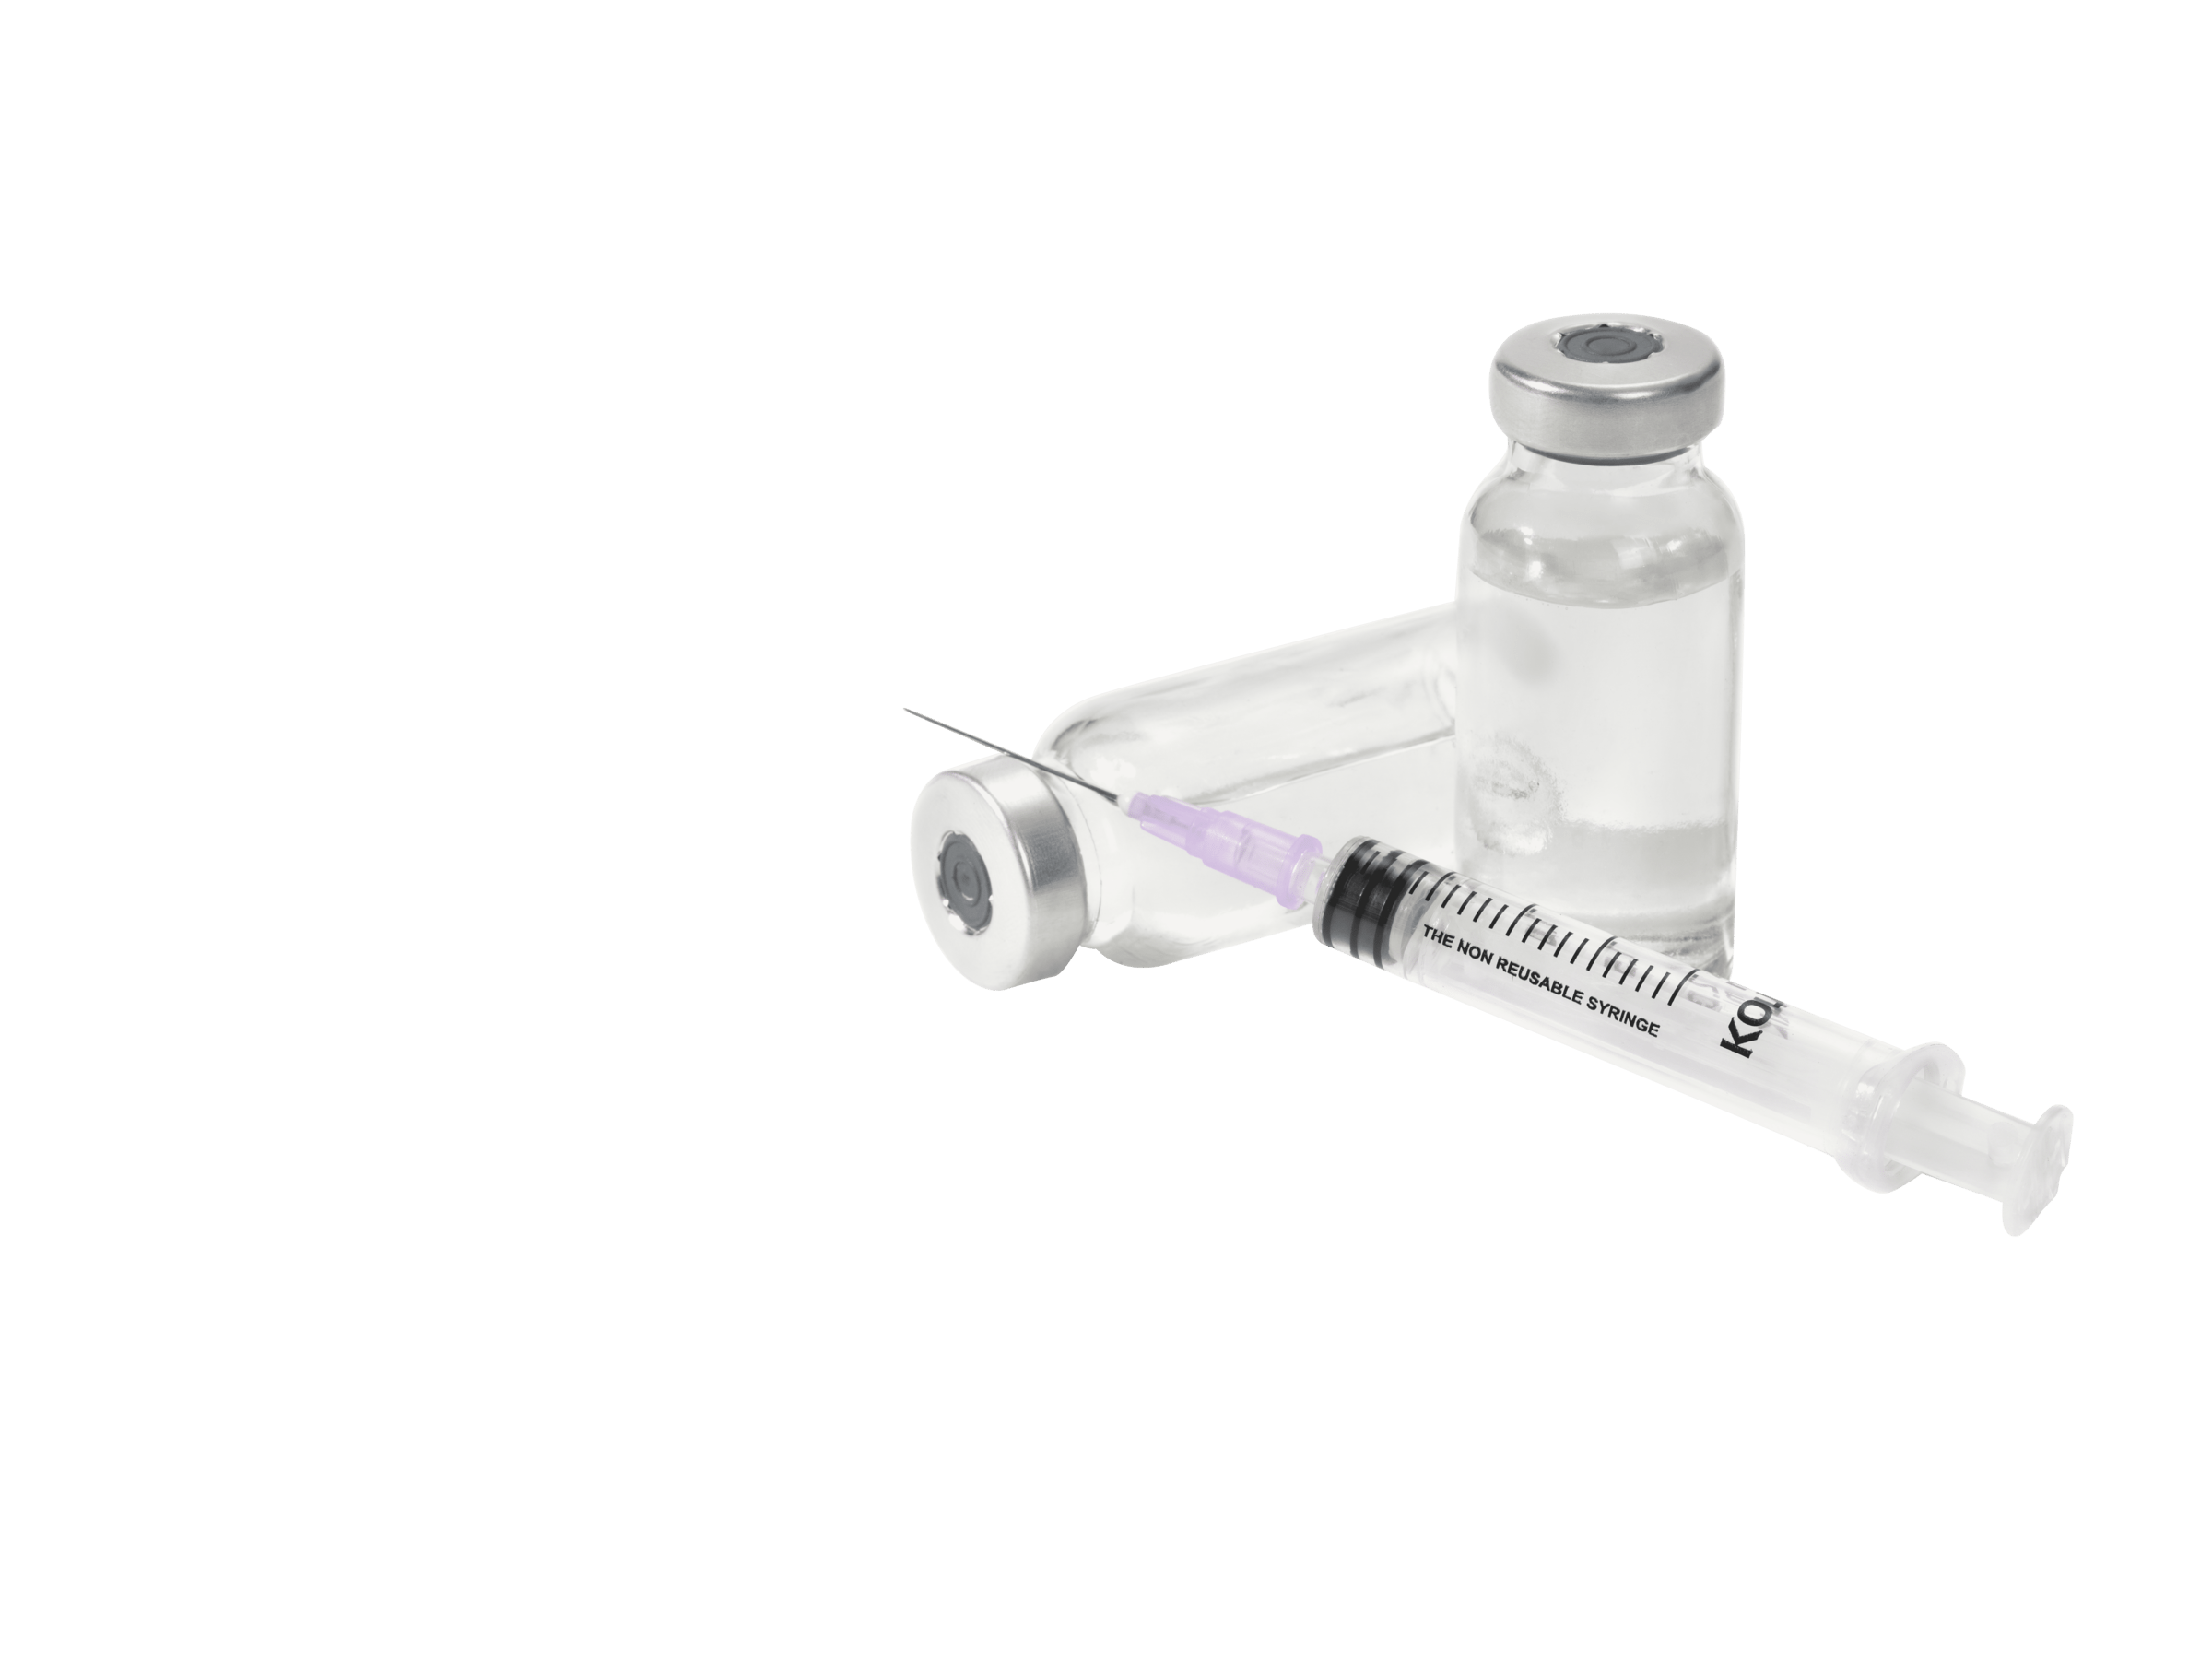 Safe and Sterile Kojak Selinge Auto-Disable Syringes for Medical image